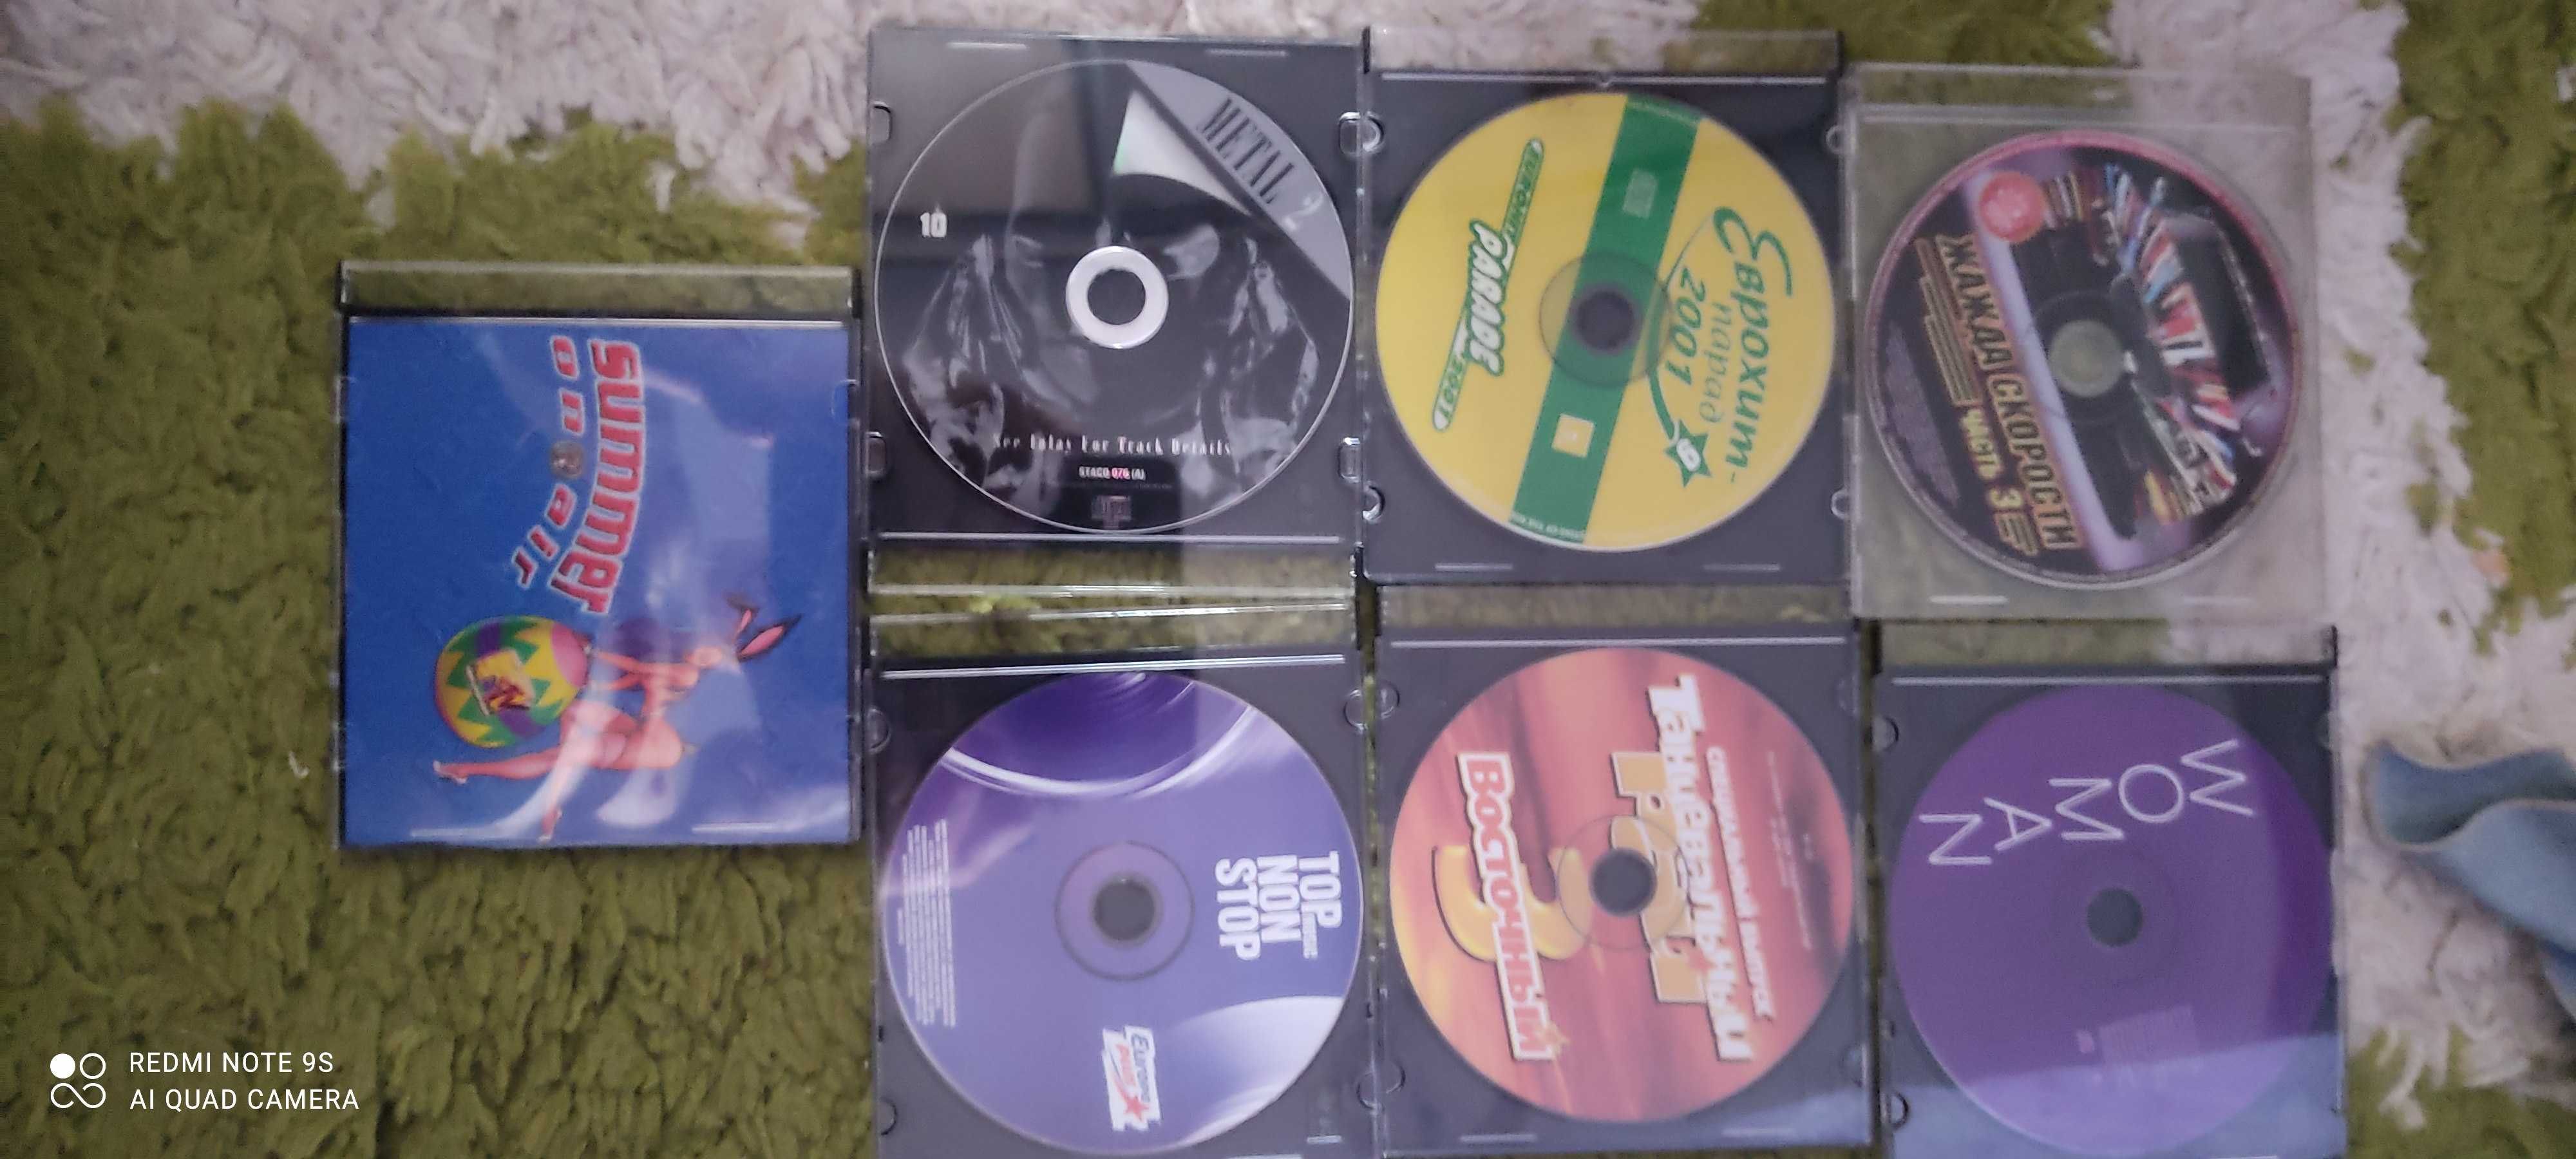 продам музыкальные диски СД\CD с музыкой, диски лицензионные